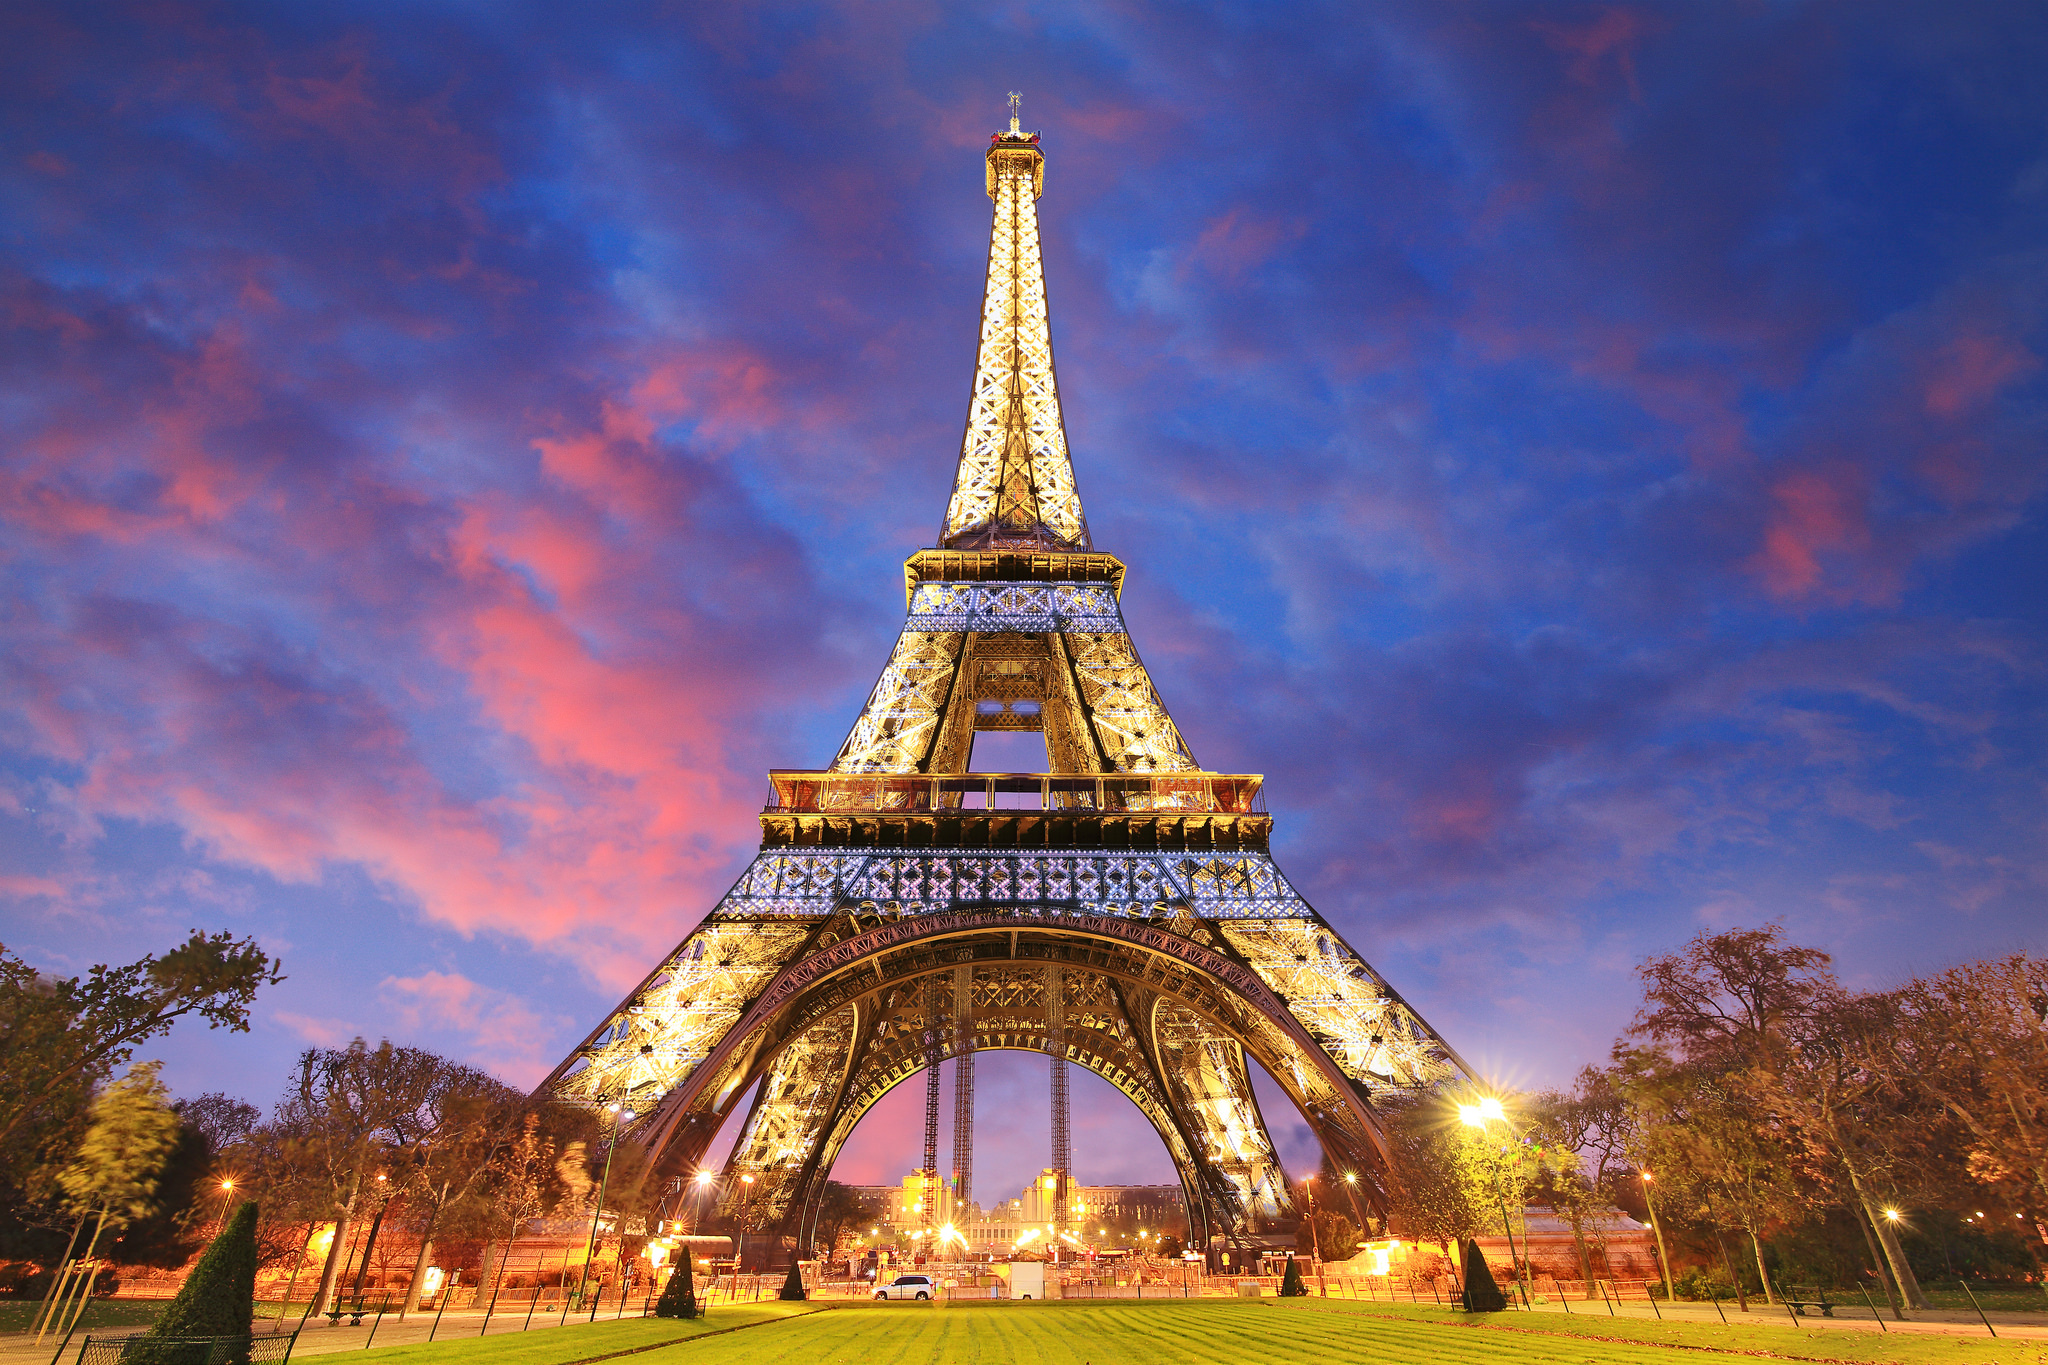 Tổng Hợp 50+ Hình Ảnh Tháp Eiffel Đẹp, Lộng Lấy, Hùng Vĩ Nhất 5